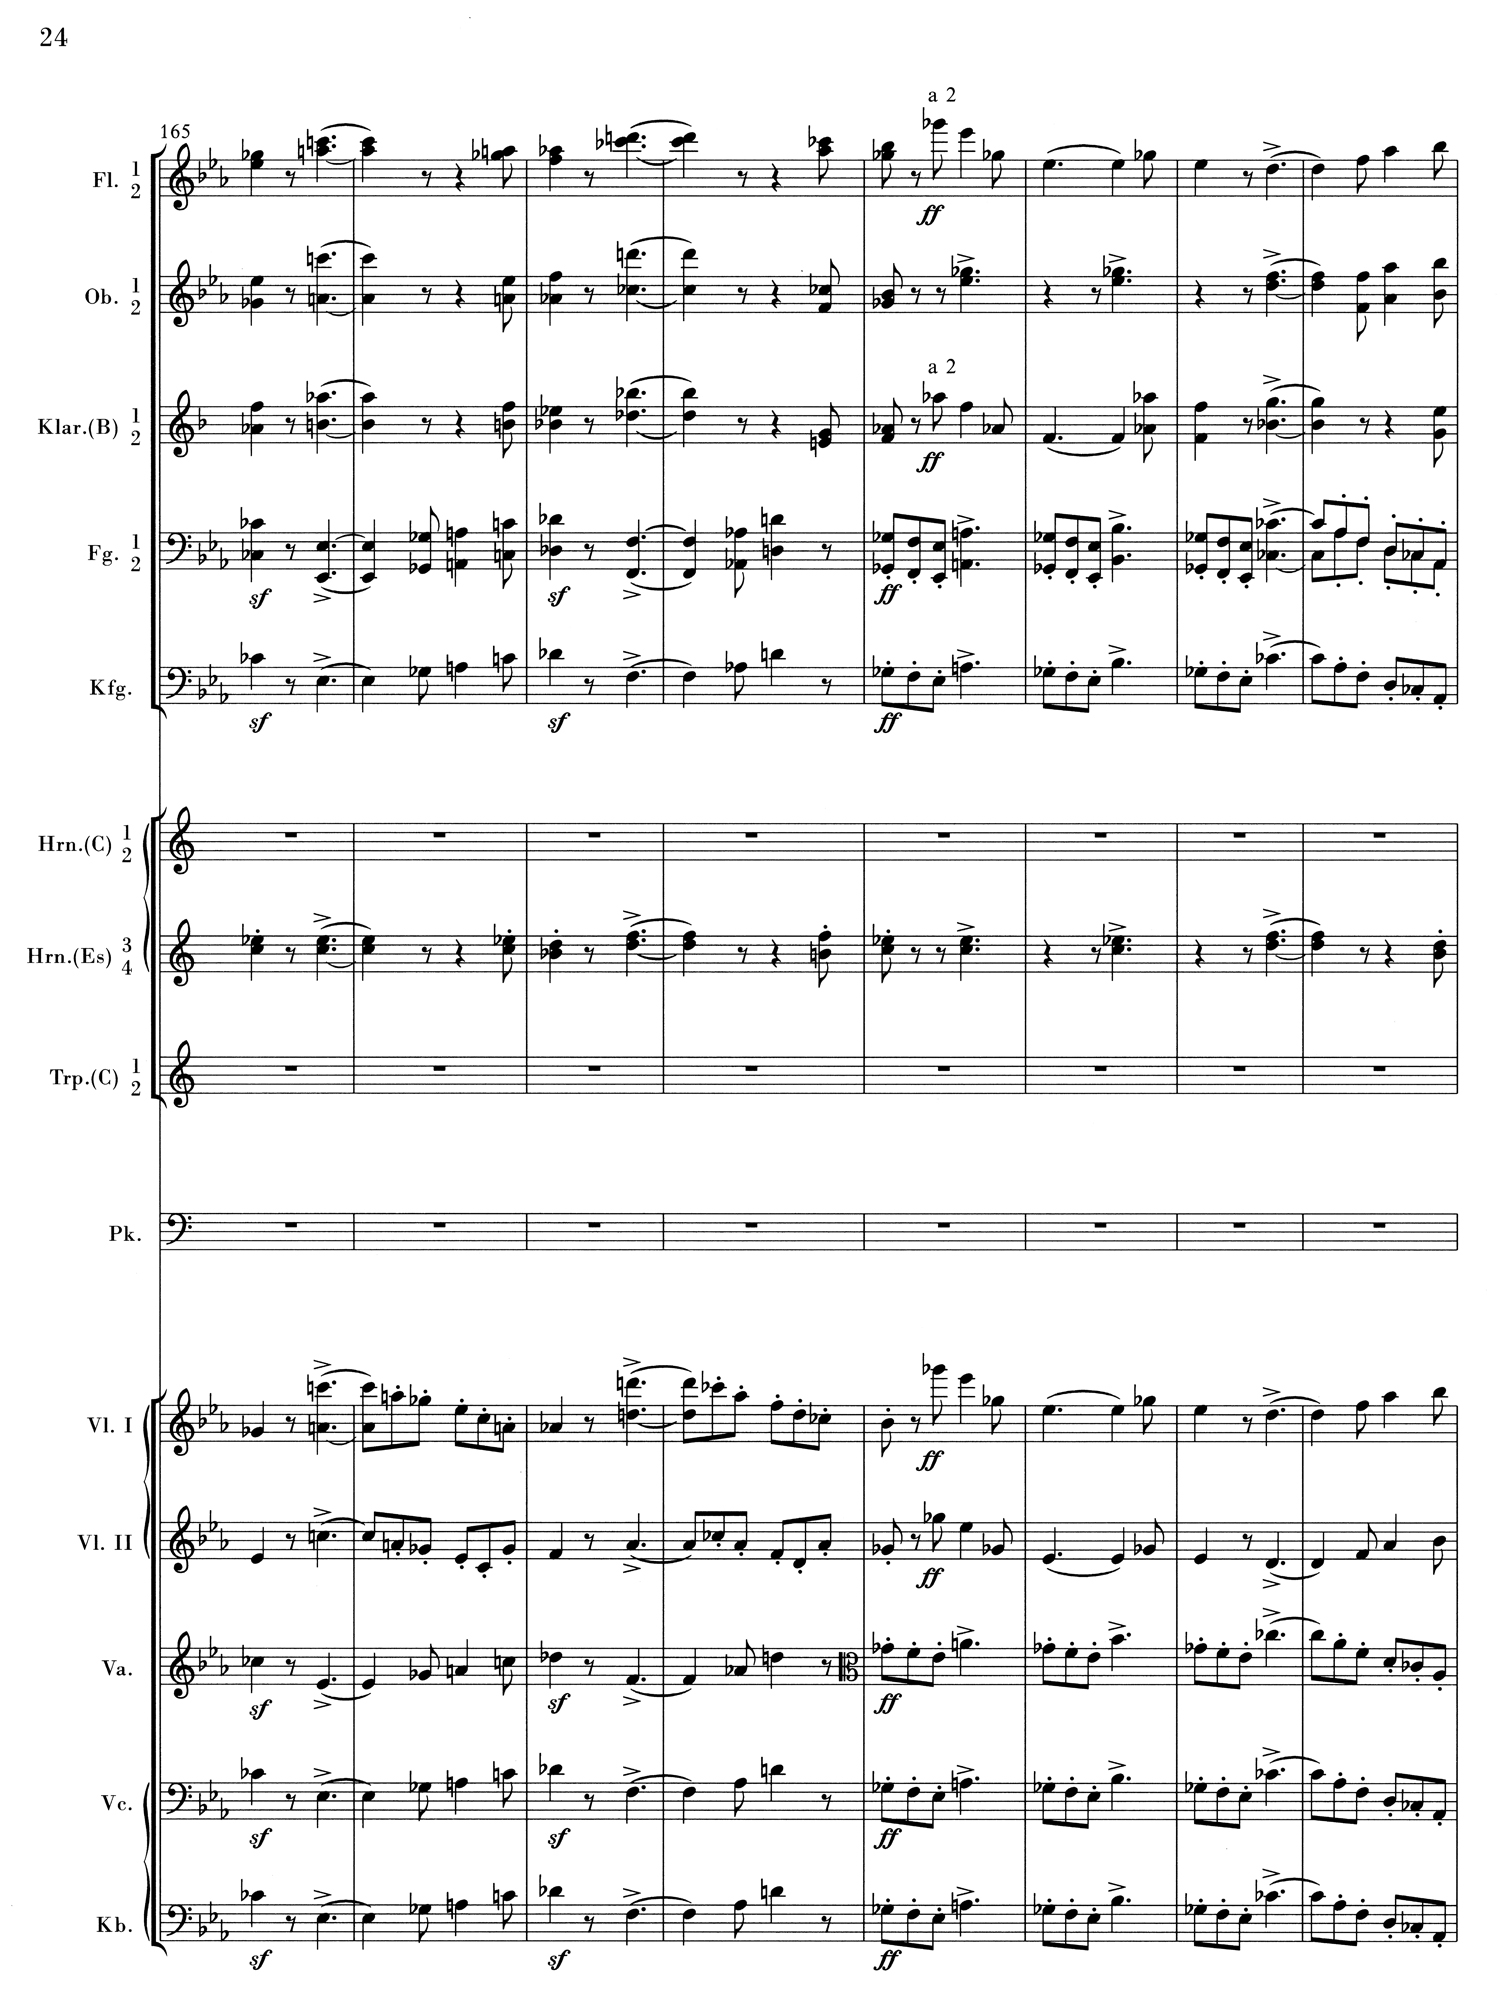 Brahms 1 Mvt 1 Score 2.jpg